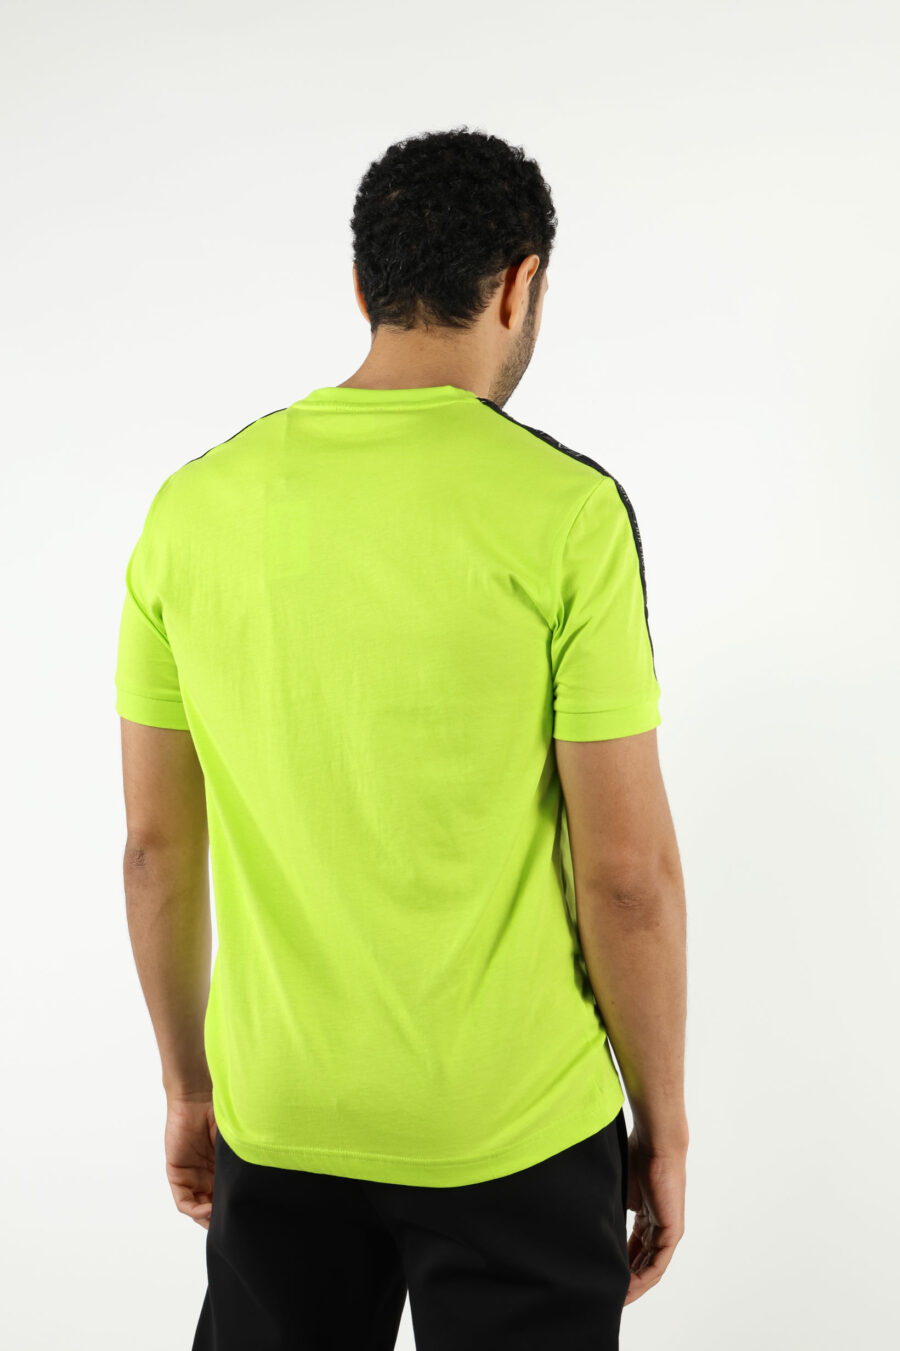 T-shirt verde-limão com mini-logotipo "lux identity" preto - 110952